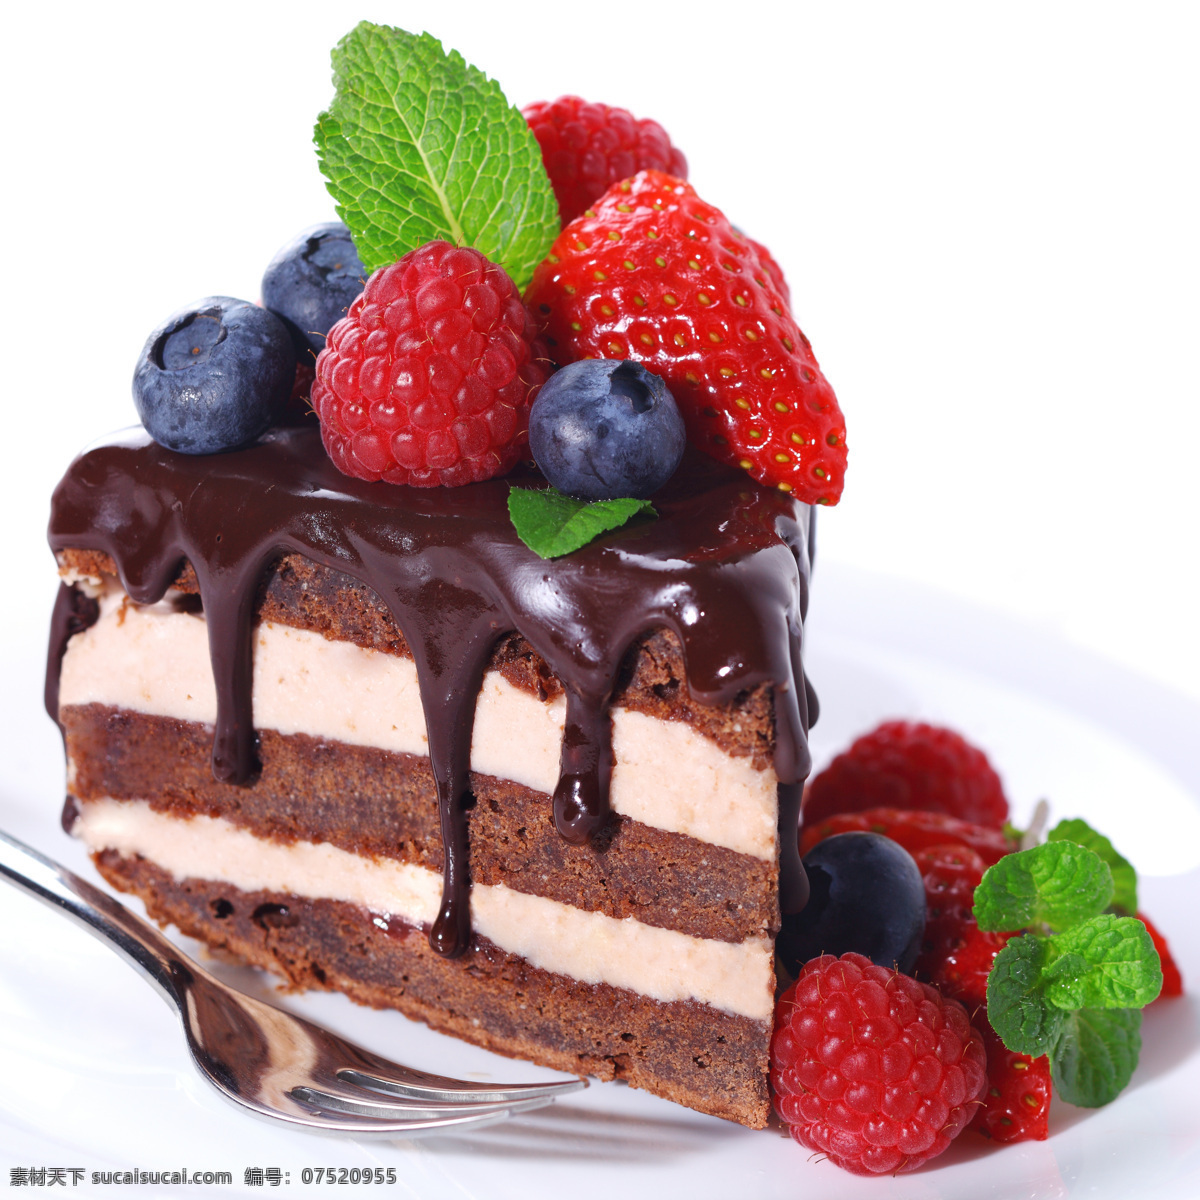 精致小蛋糕 蛋糕 面包 生日蛋糕 爱情 甜蜜 奶油 巧克力 葡萄干 果仁 草莓 水果 水果味 点心 甜点 糕点 西餐美食 餐饮美食